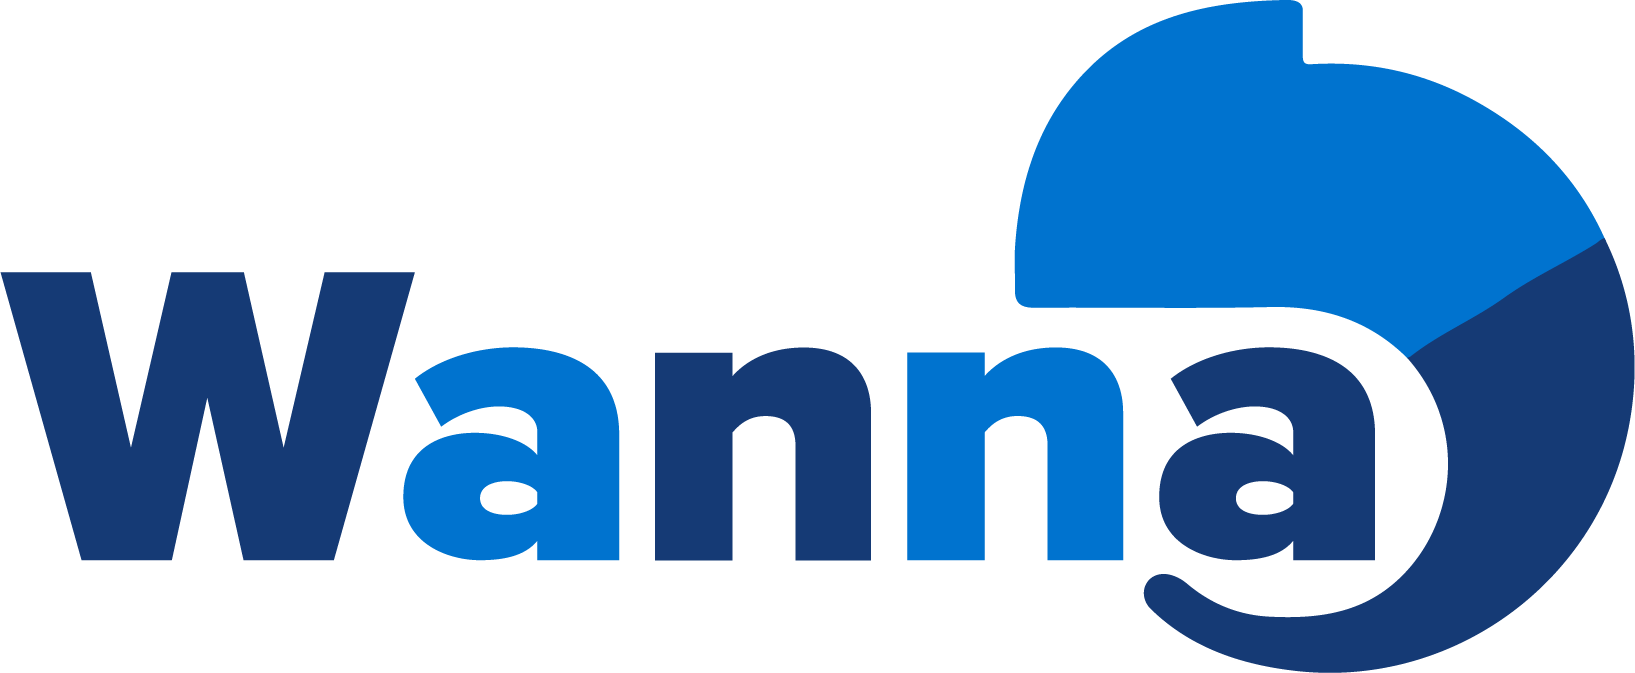 wanna-logo